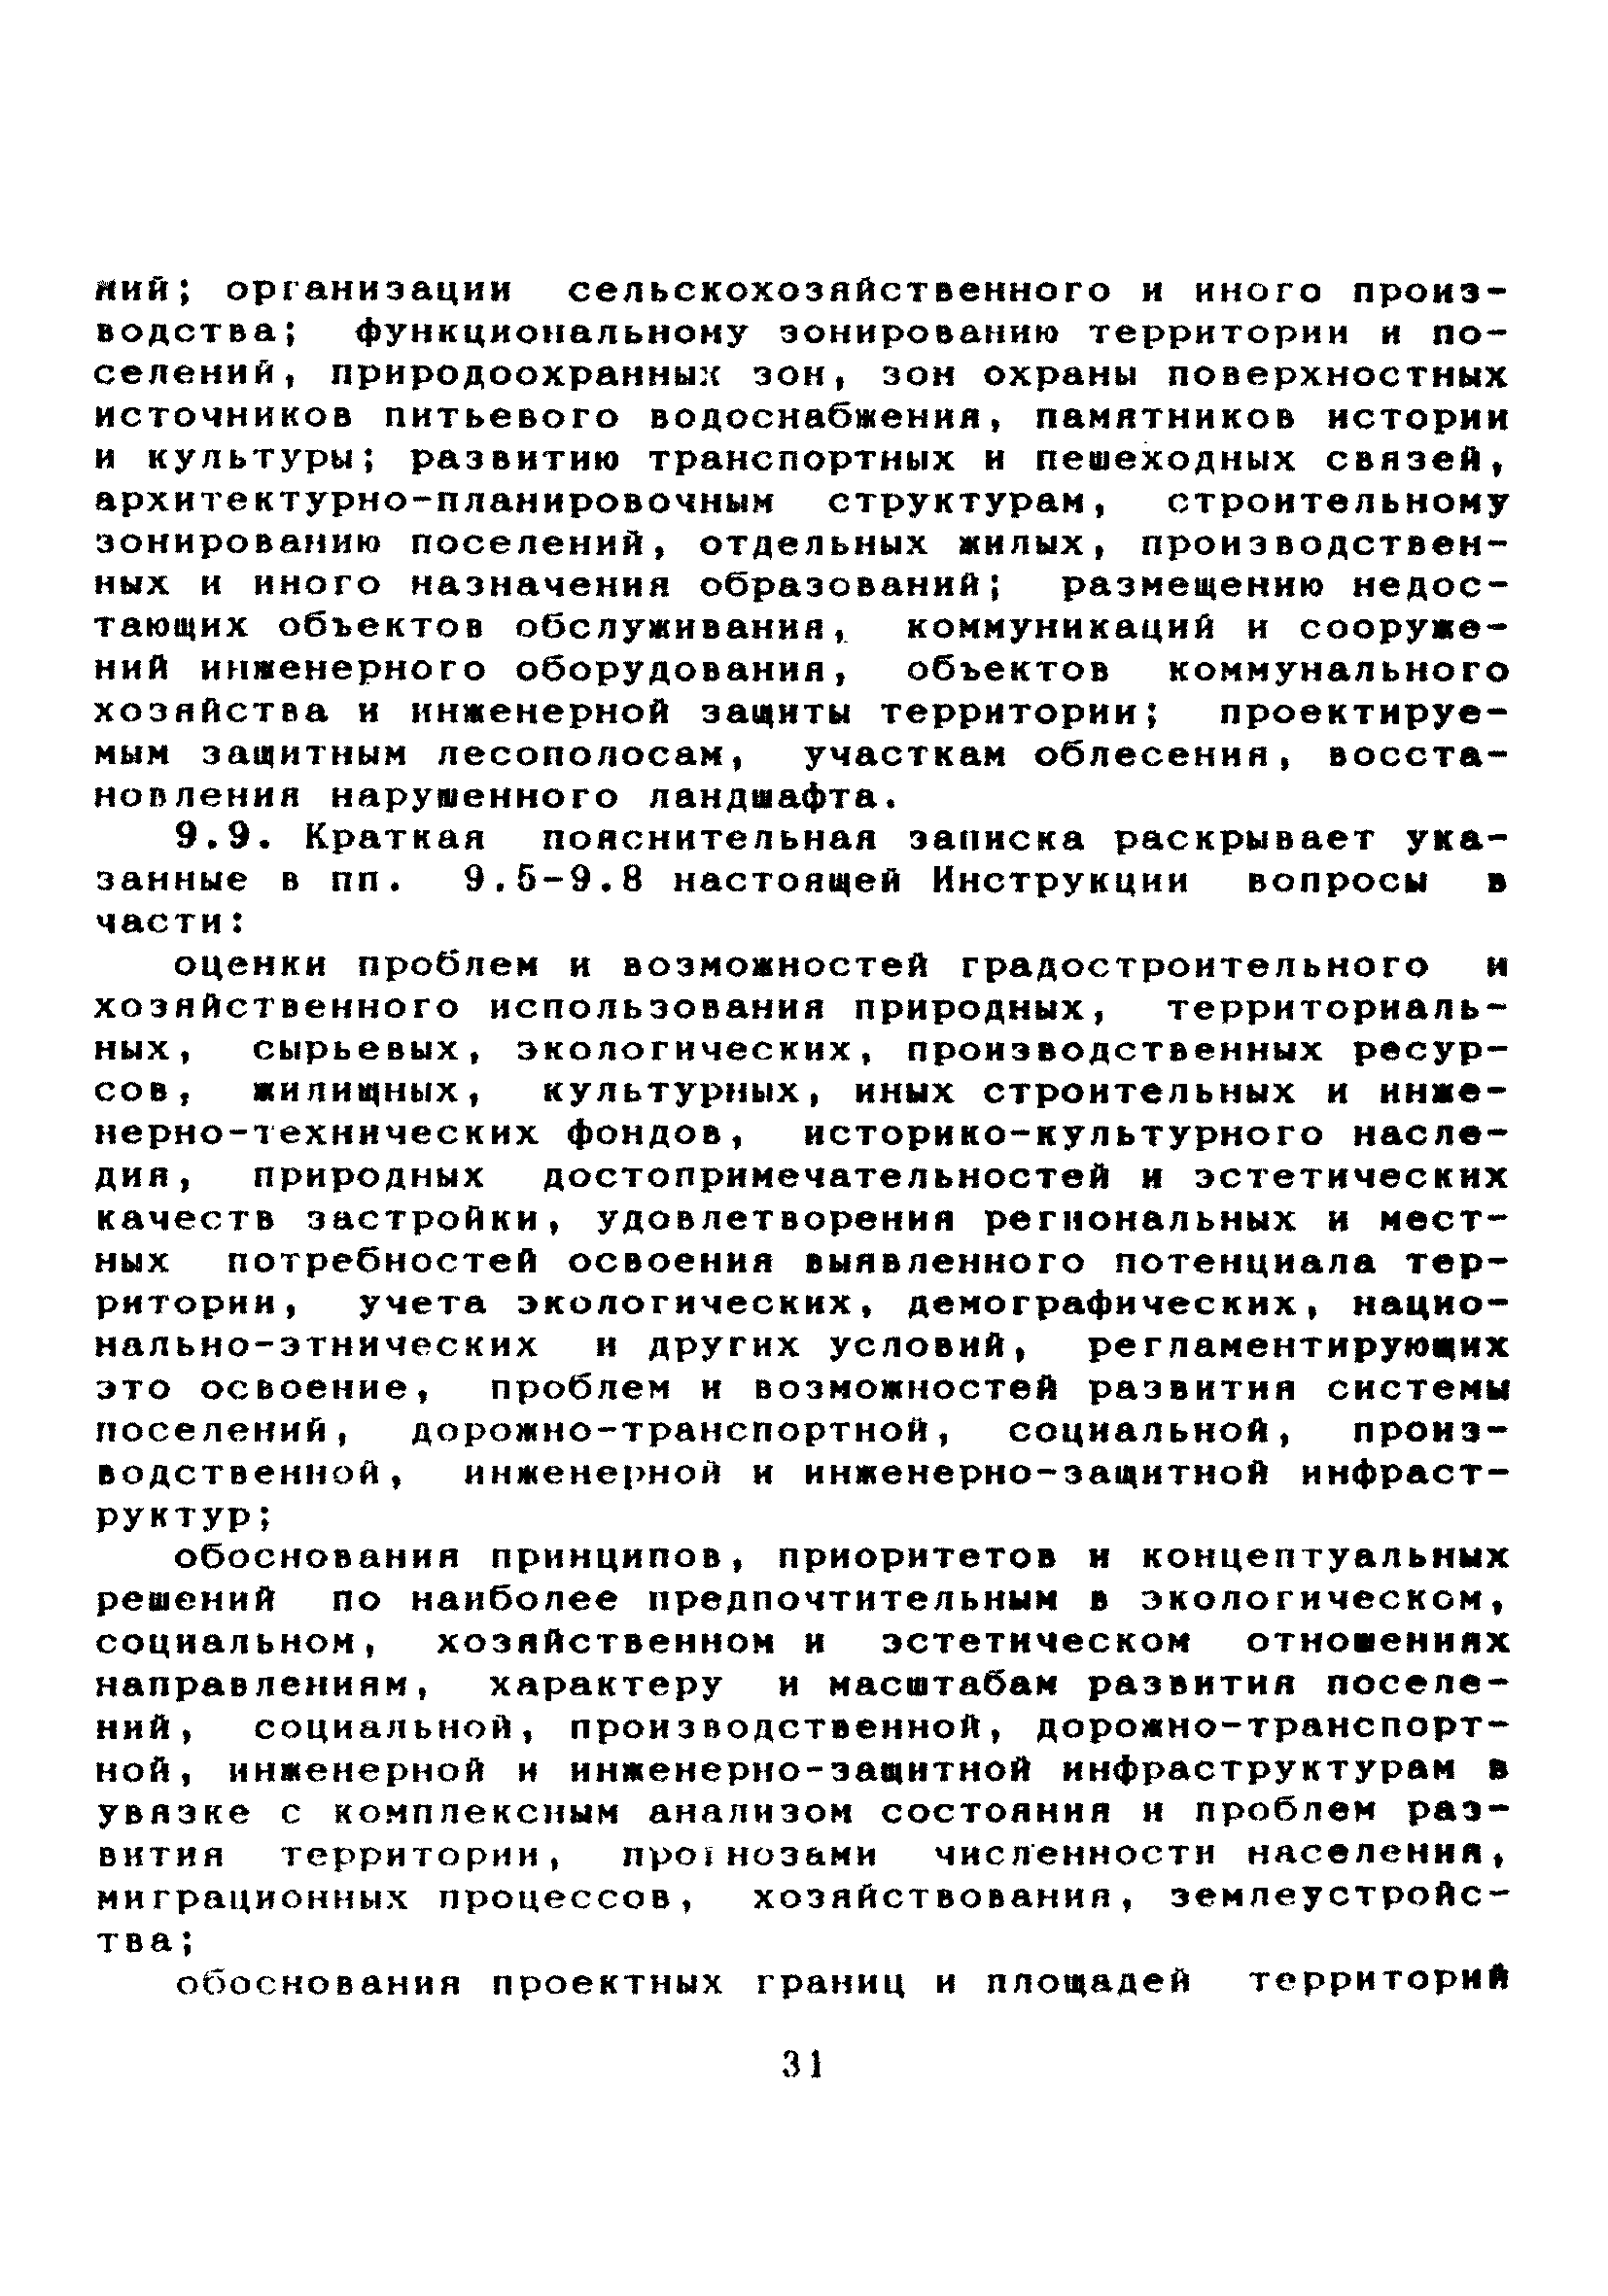 МДС 11-7.2000